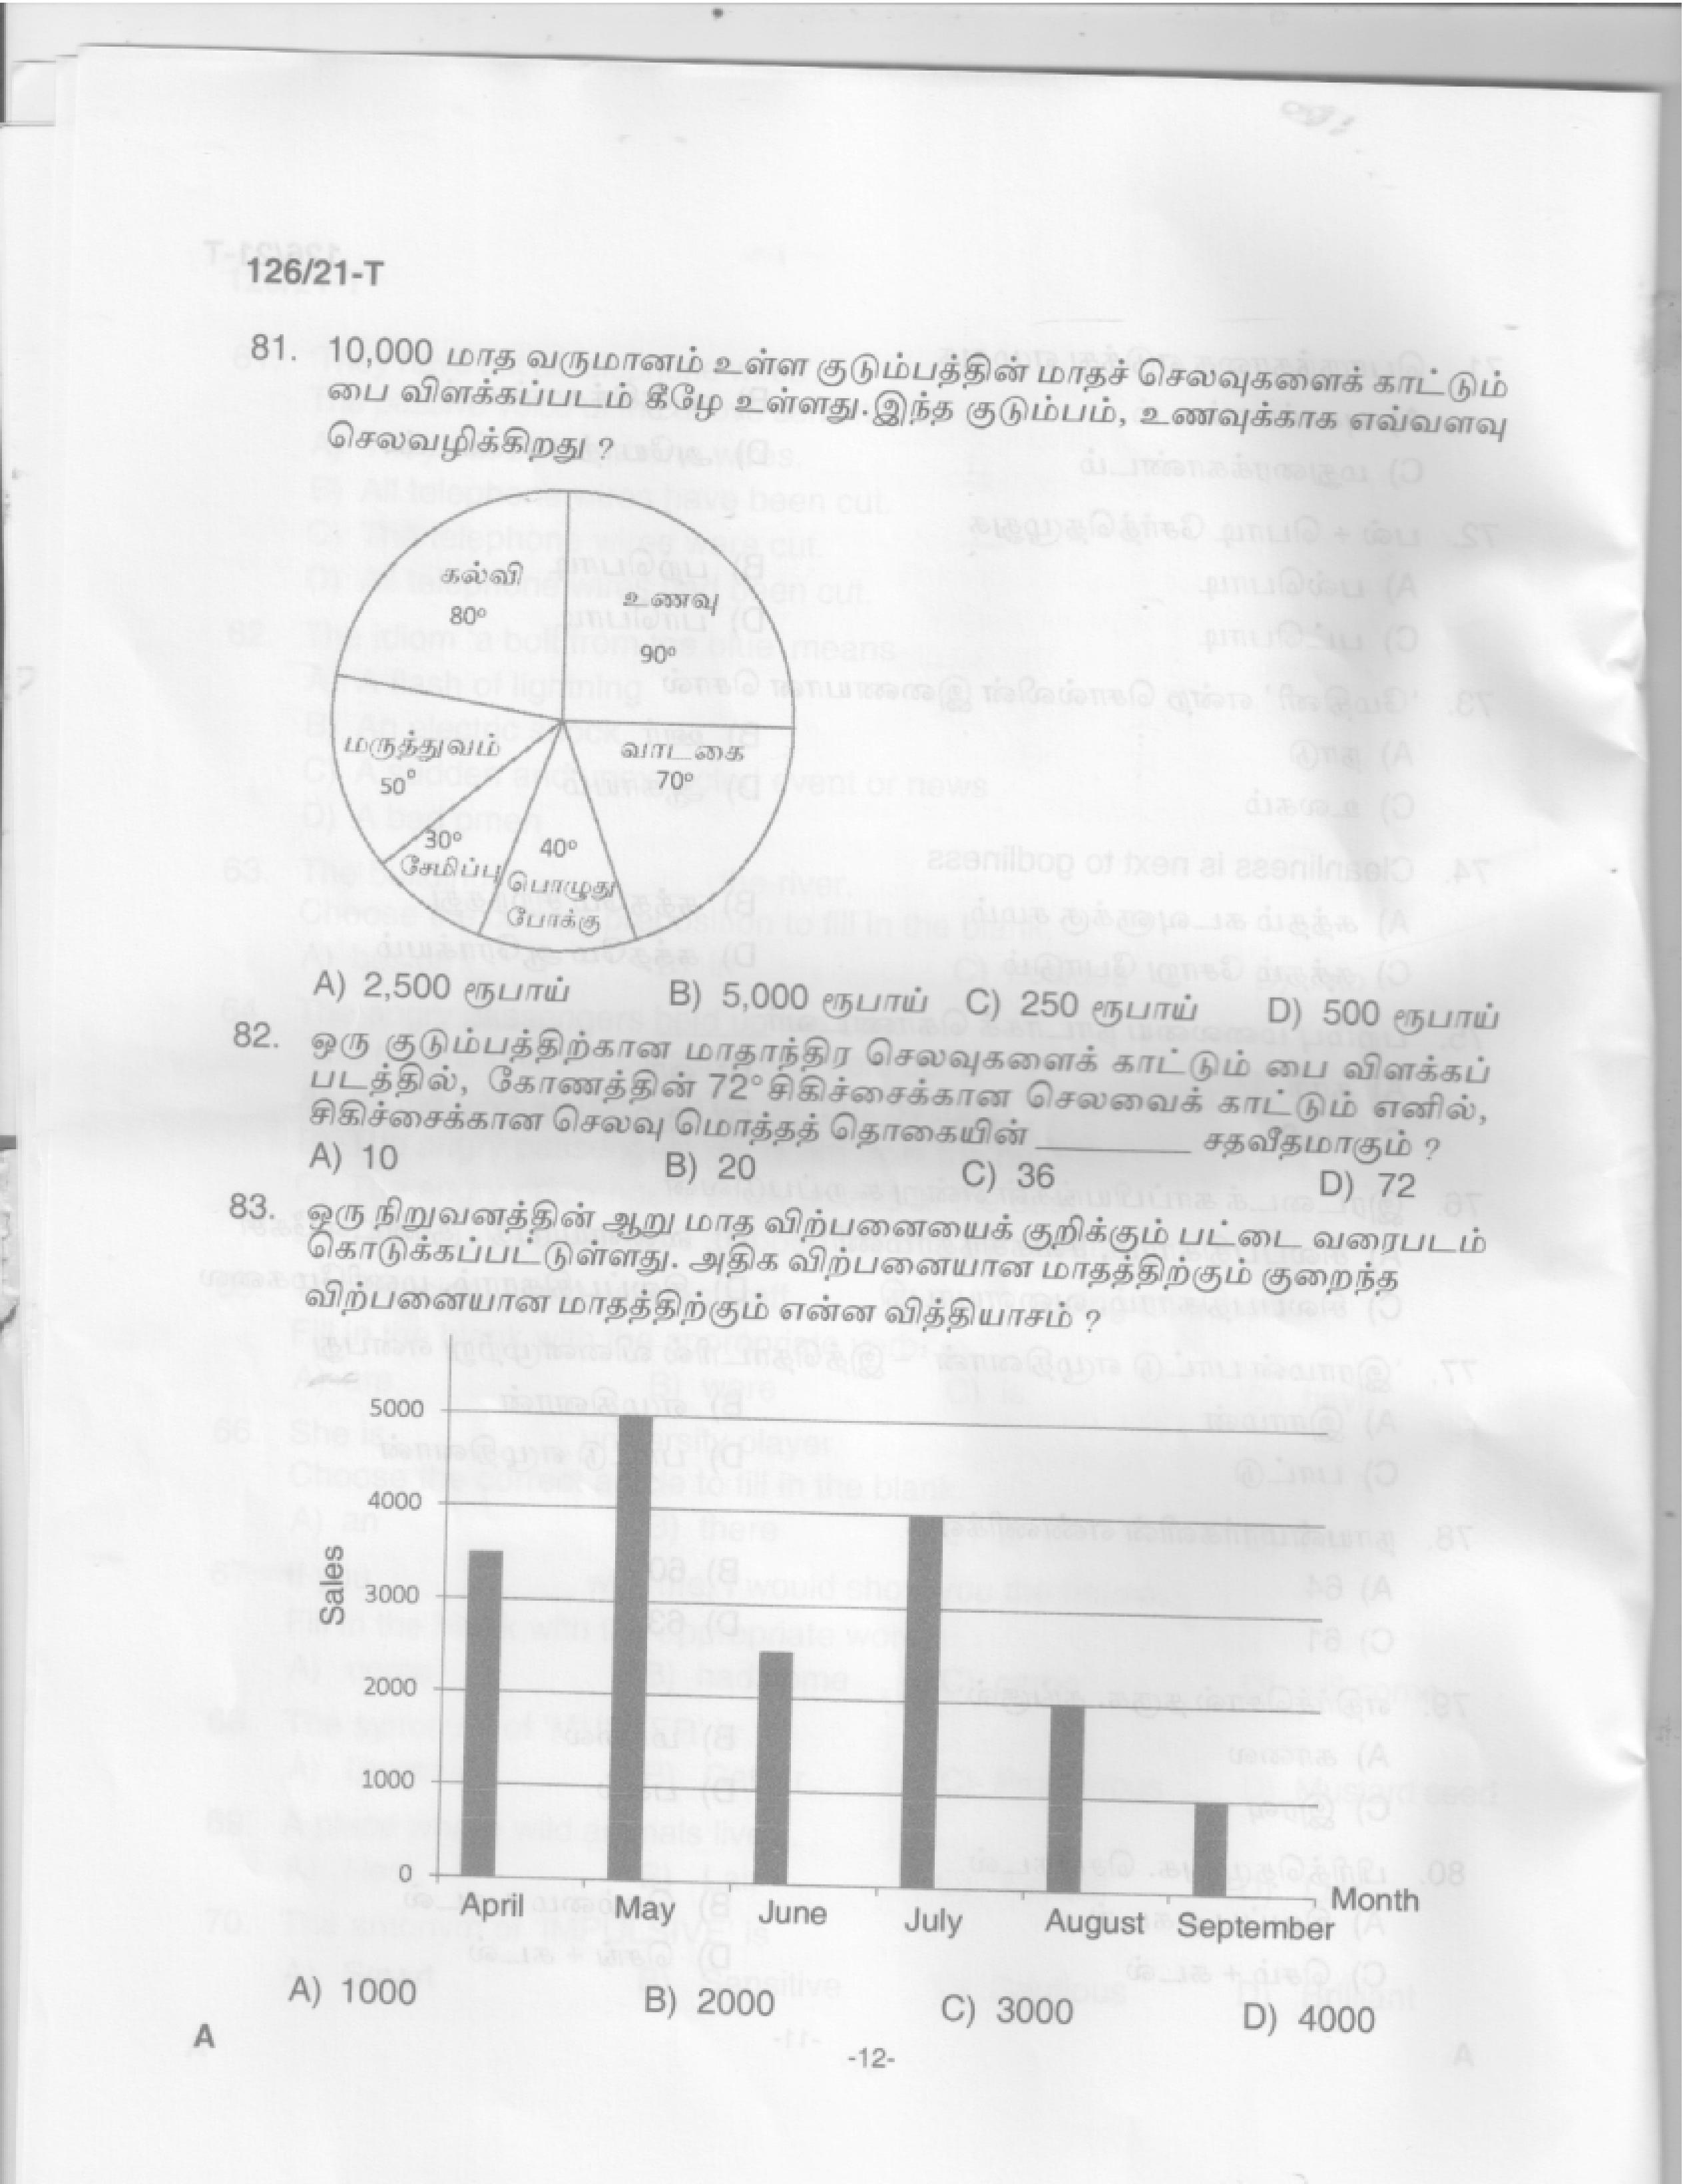 Upto SSLC Level Main Exam Assistant Compiler Tamil Exam 2021 Code 1262021 T 10